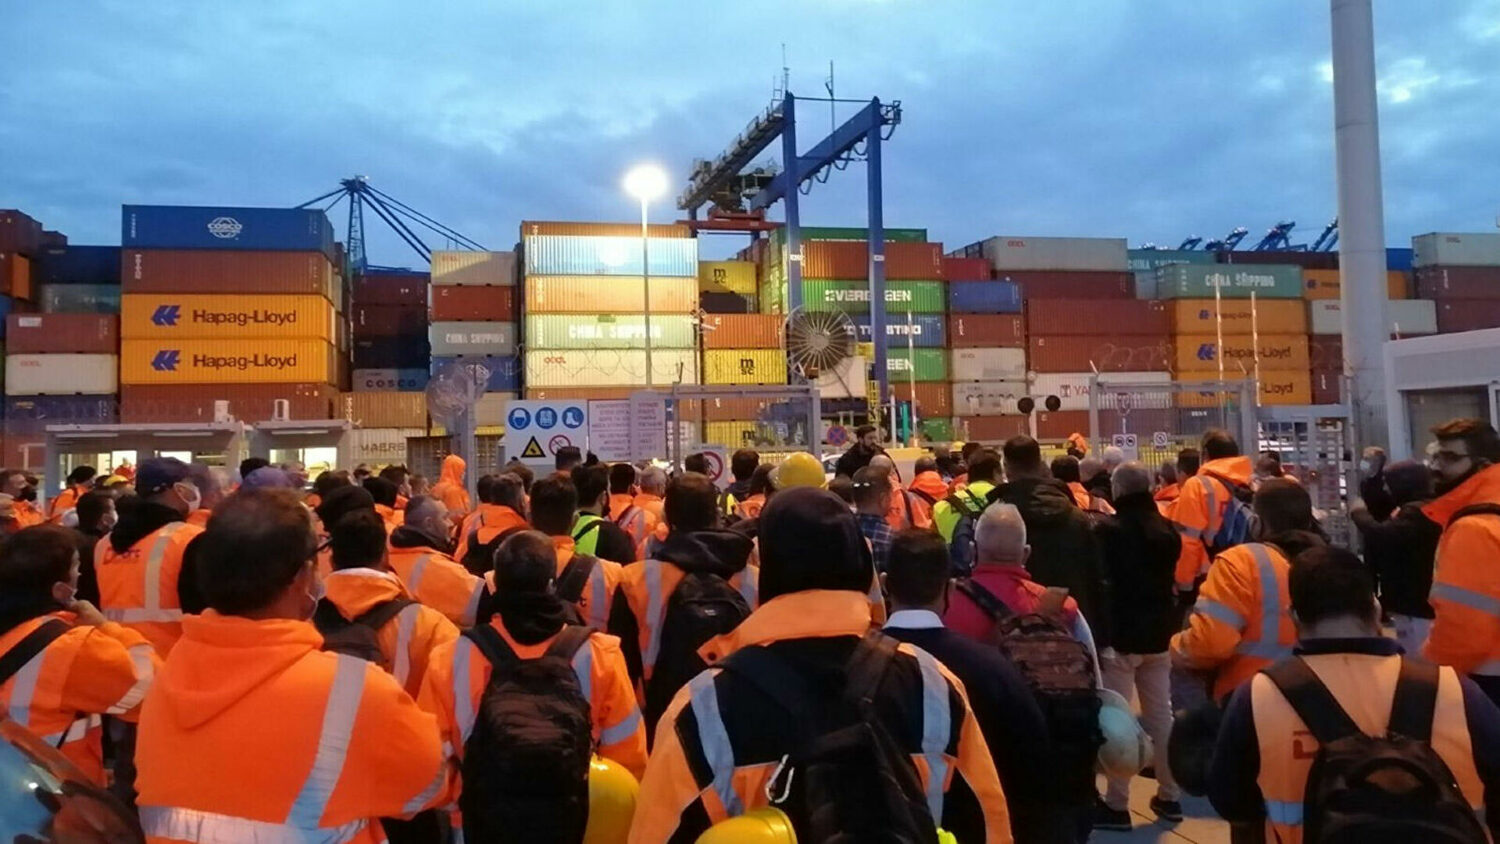 22 παραγωγικοί φορείς ζητούν να βρεθεί λύση με το λιμάνι του Πειραιά